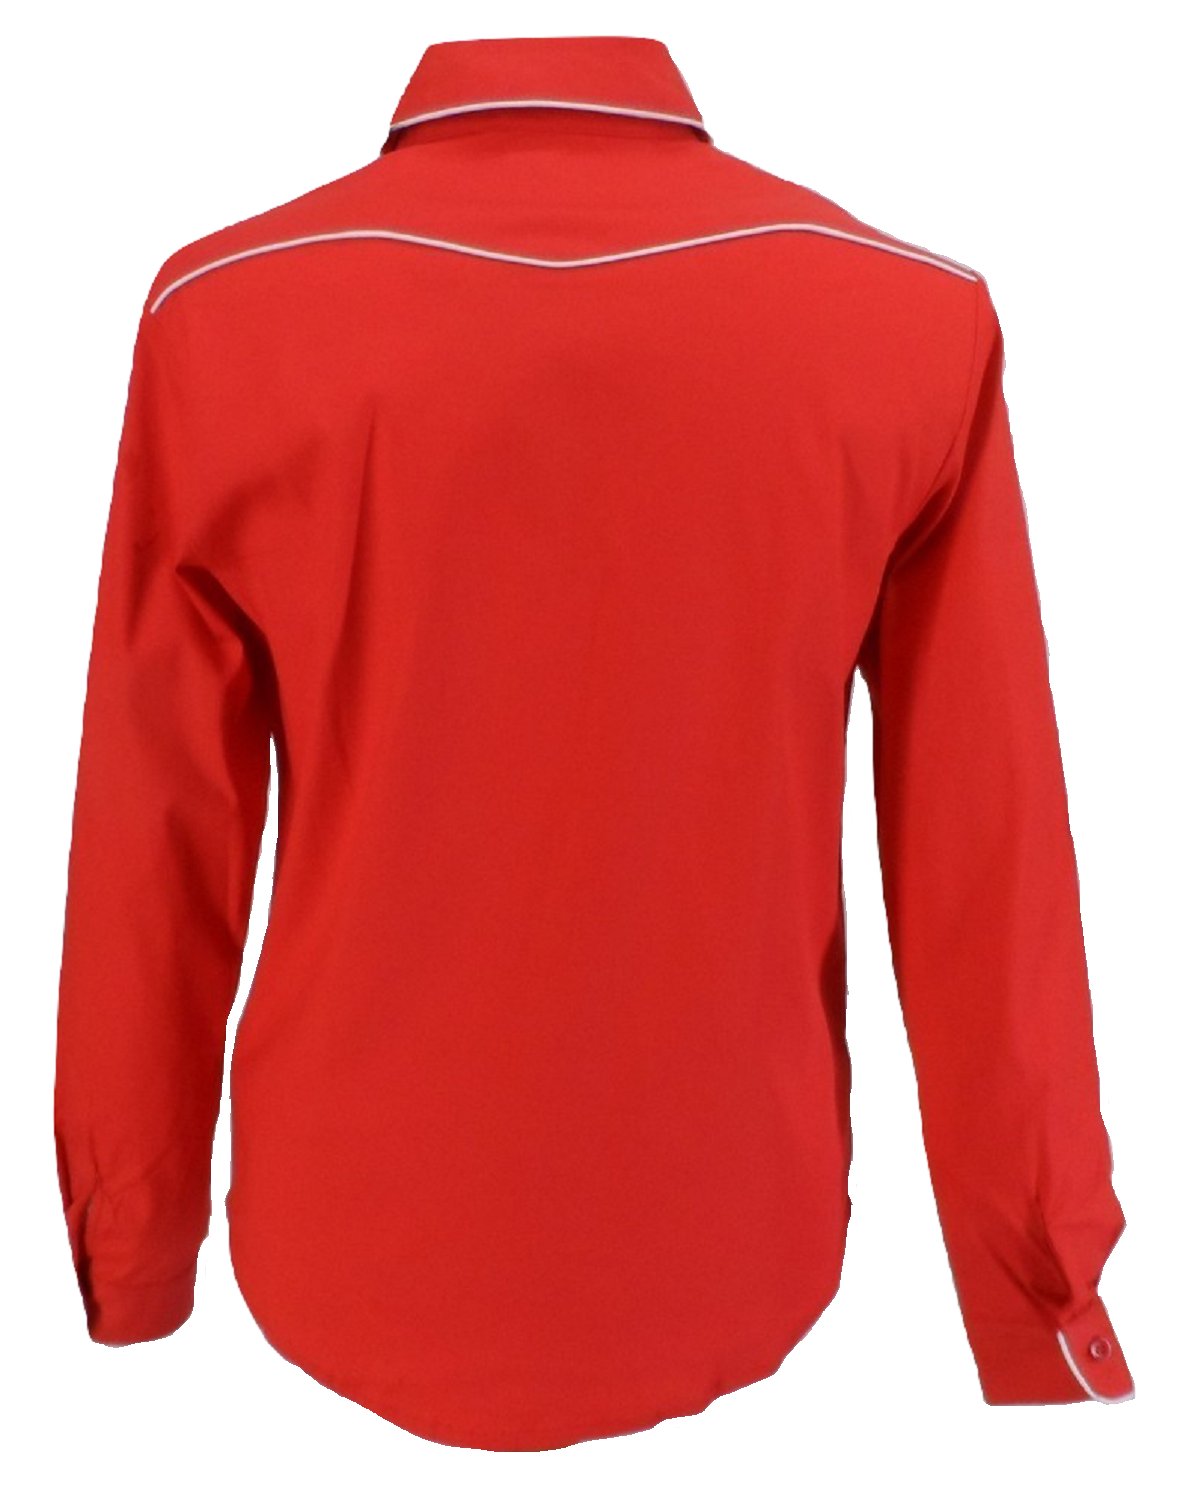 Mazeys Camisas Vintage/Retro De Vaquero Occidental Rojo Para Hombre